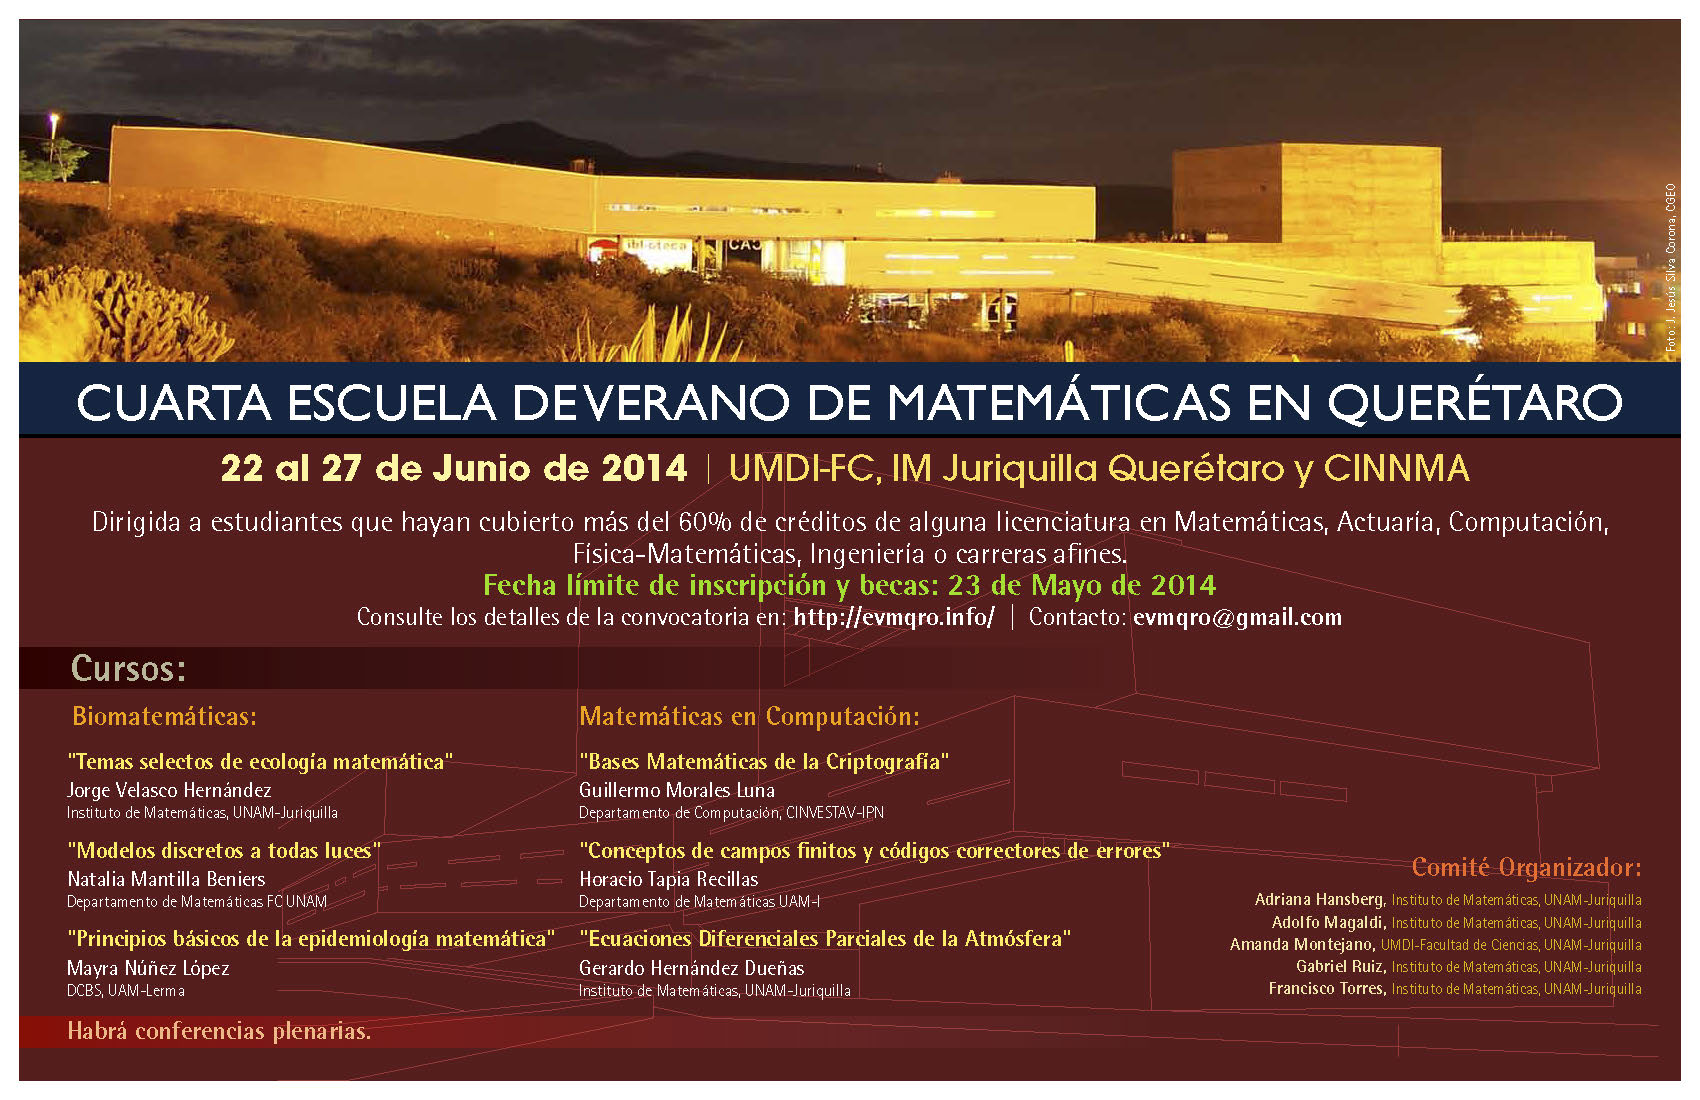 Cuarta Escuela de Verano de Matemáticas en Querétaro